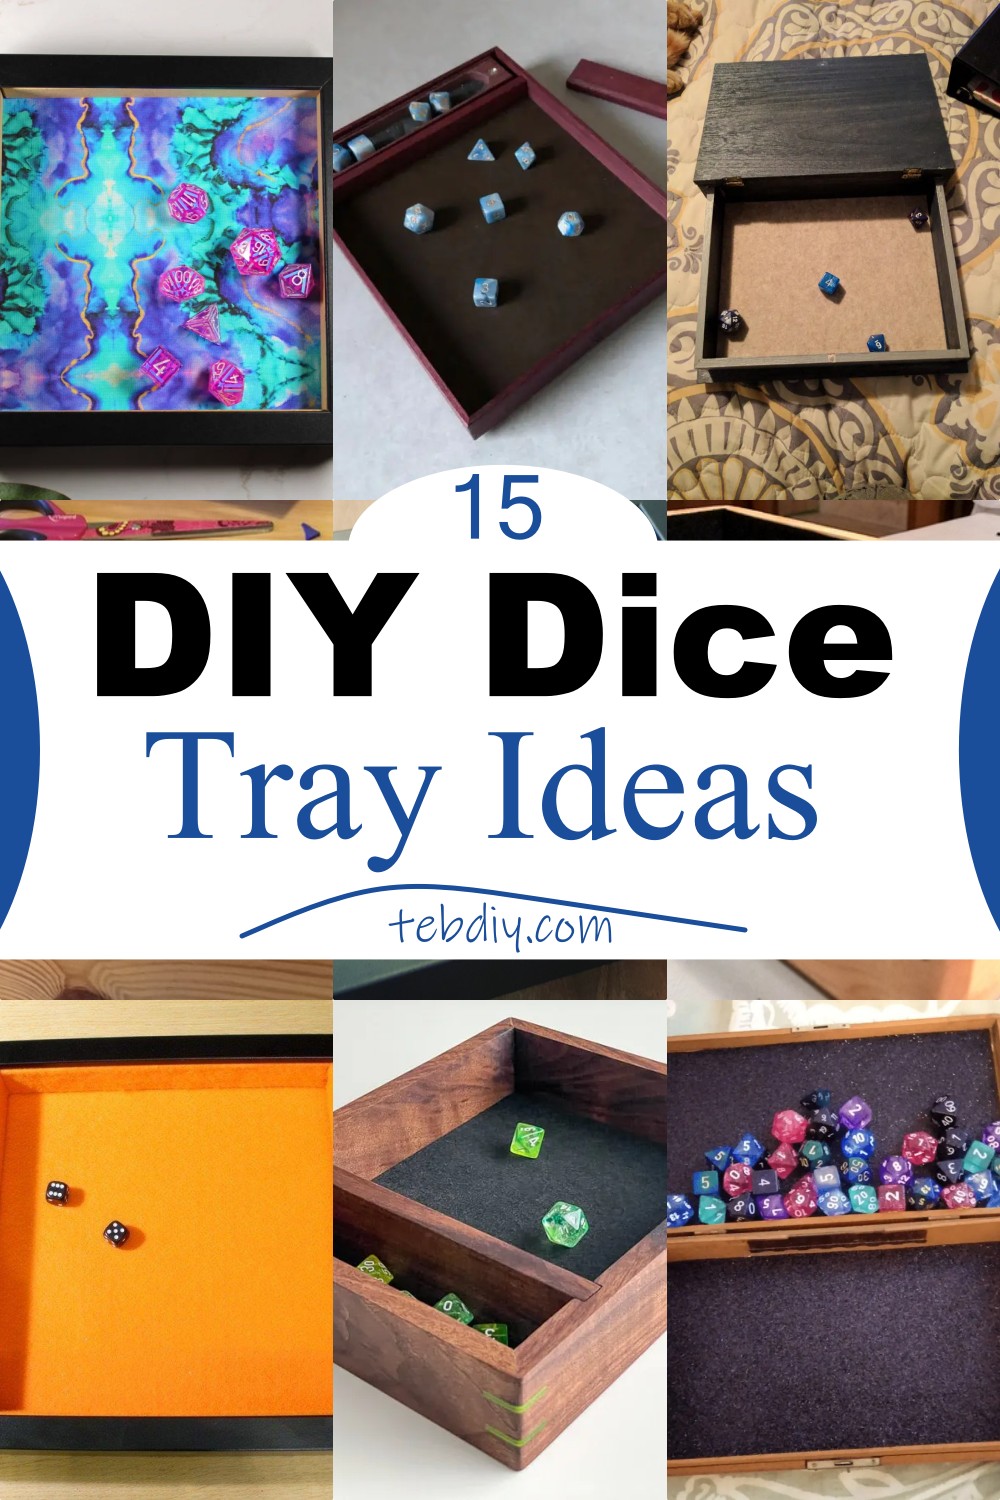 15 DIY Dice Tray Ideas